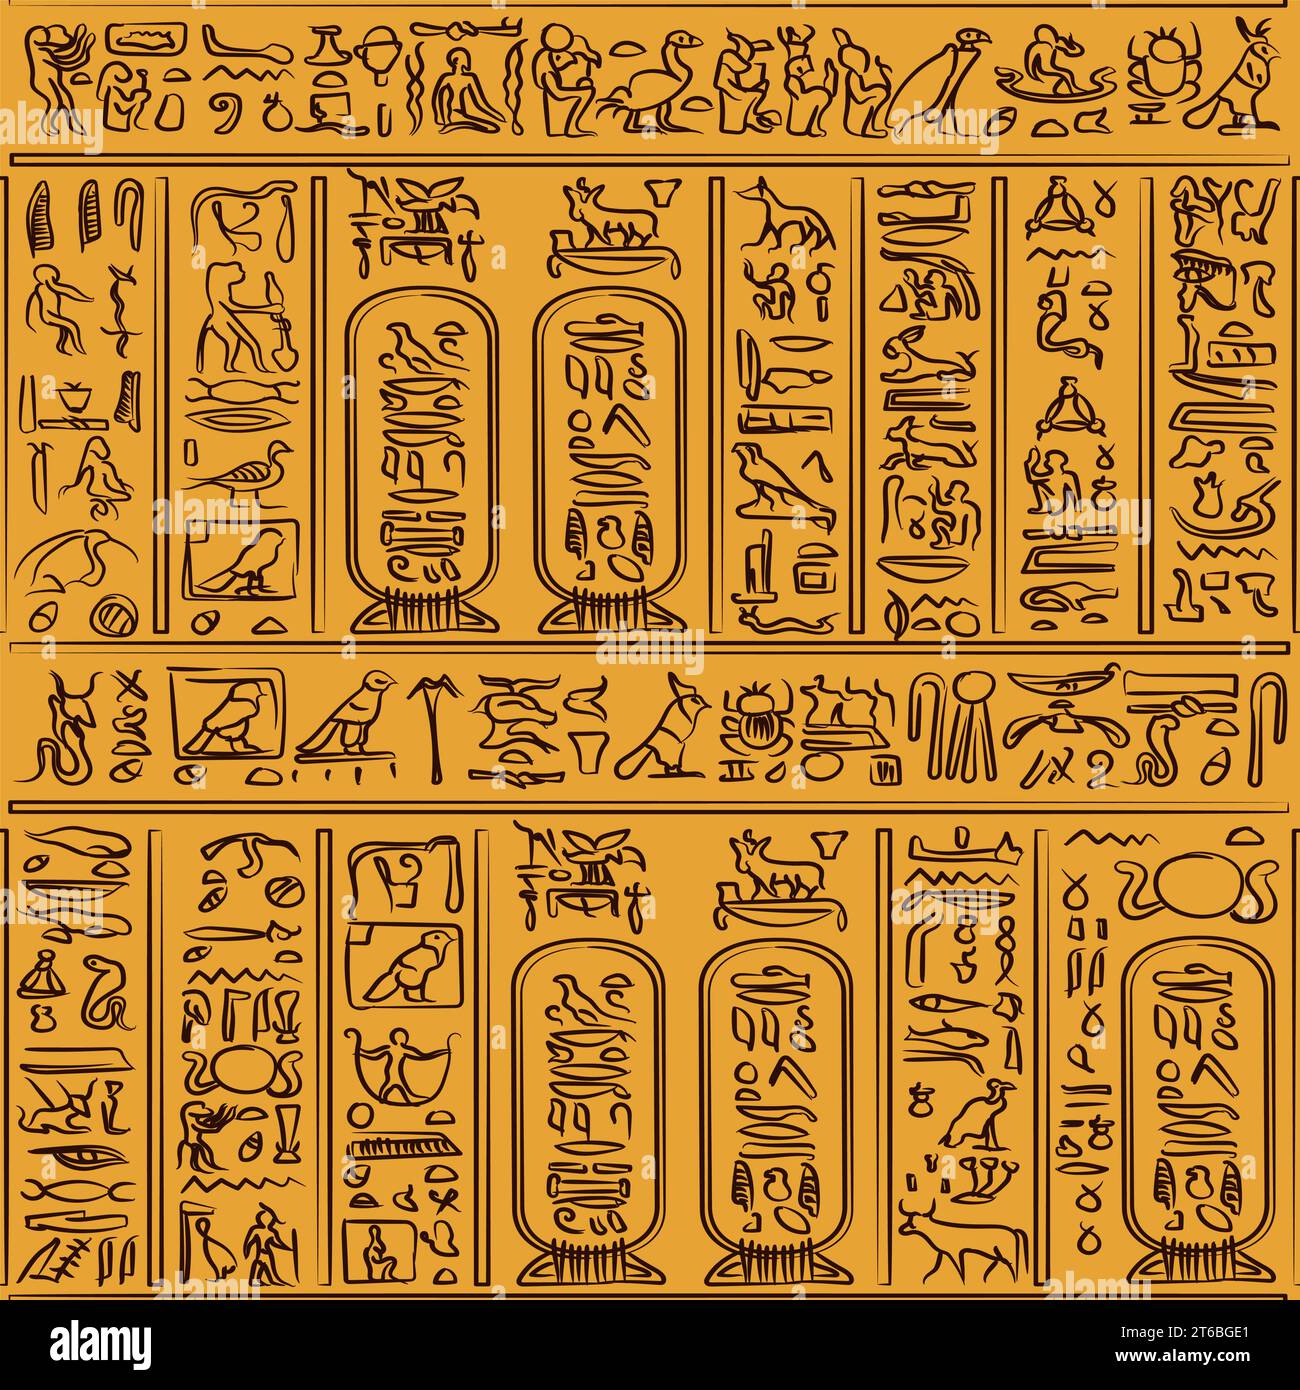 Motif de l'alphabet hiéroglyphes égyptien antique sur fond noir. Concept de culture ancienne et égyptienne Illustration de Vecteur